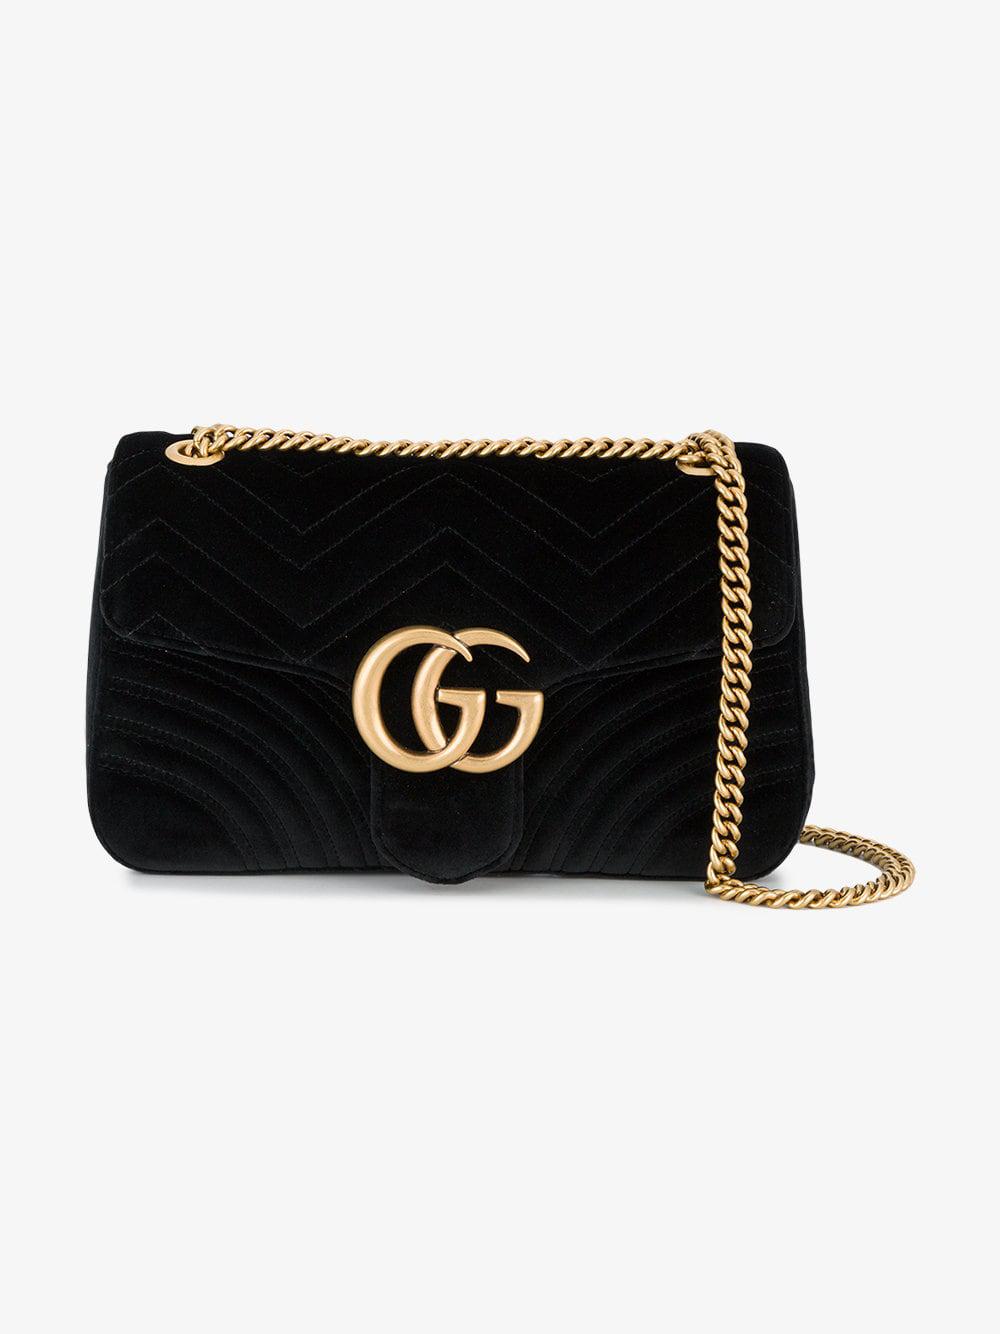 Gucci Marmont 2.0 Velvet Shoulder Bag in Black - Lyst